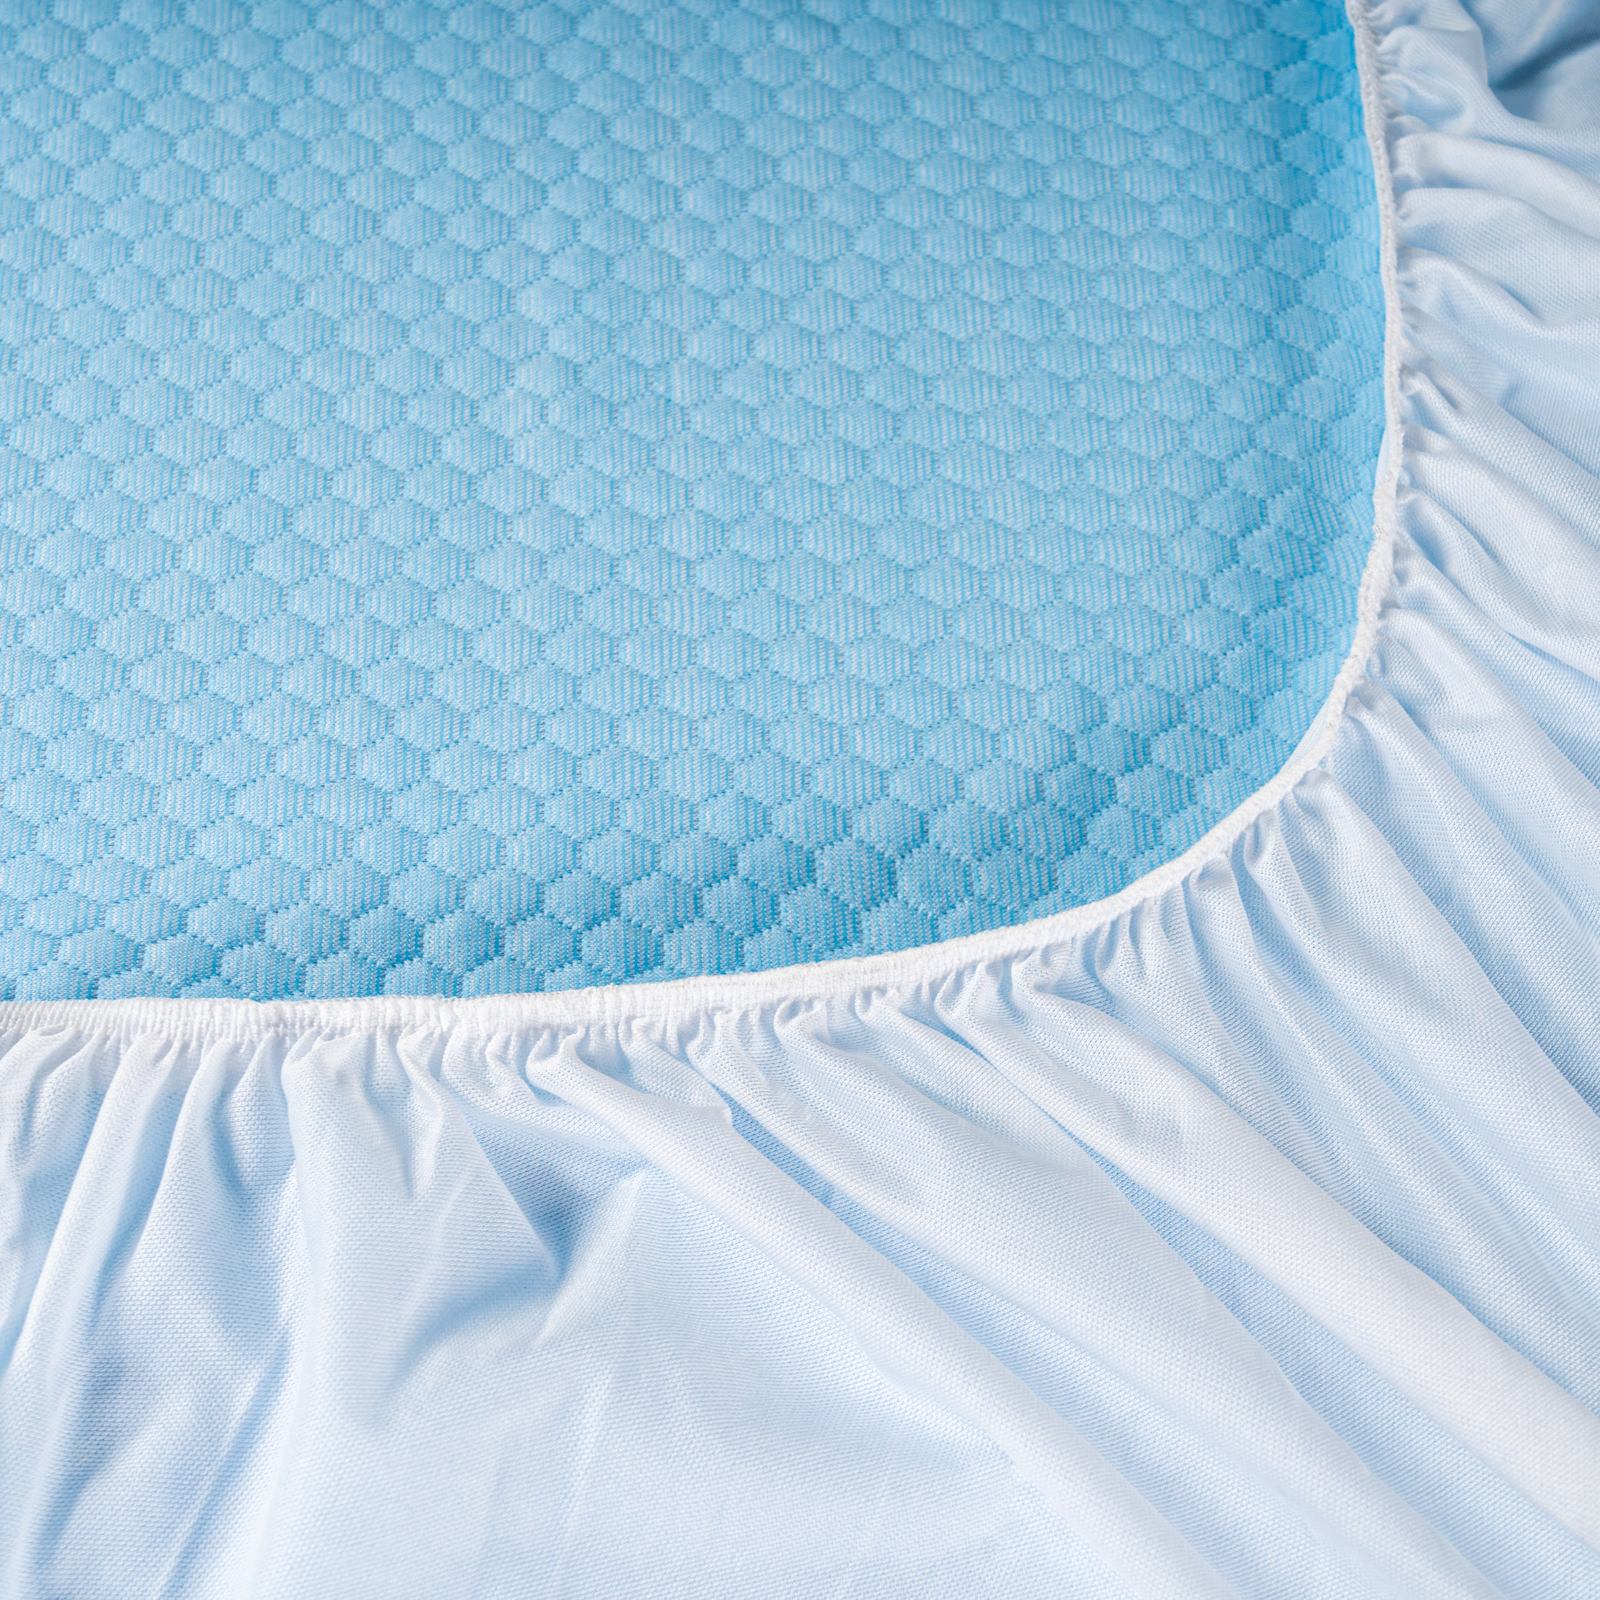 Наматрасник-чехол Medsleep Fresh Sleep белый с голубым 90х200х30 см, цвет голубой - фото 5